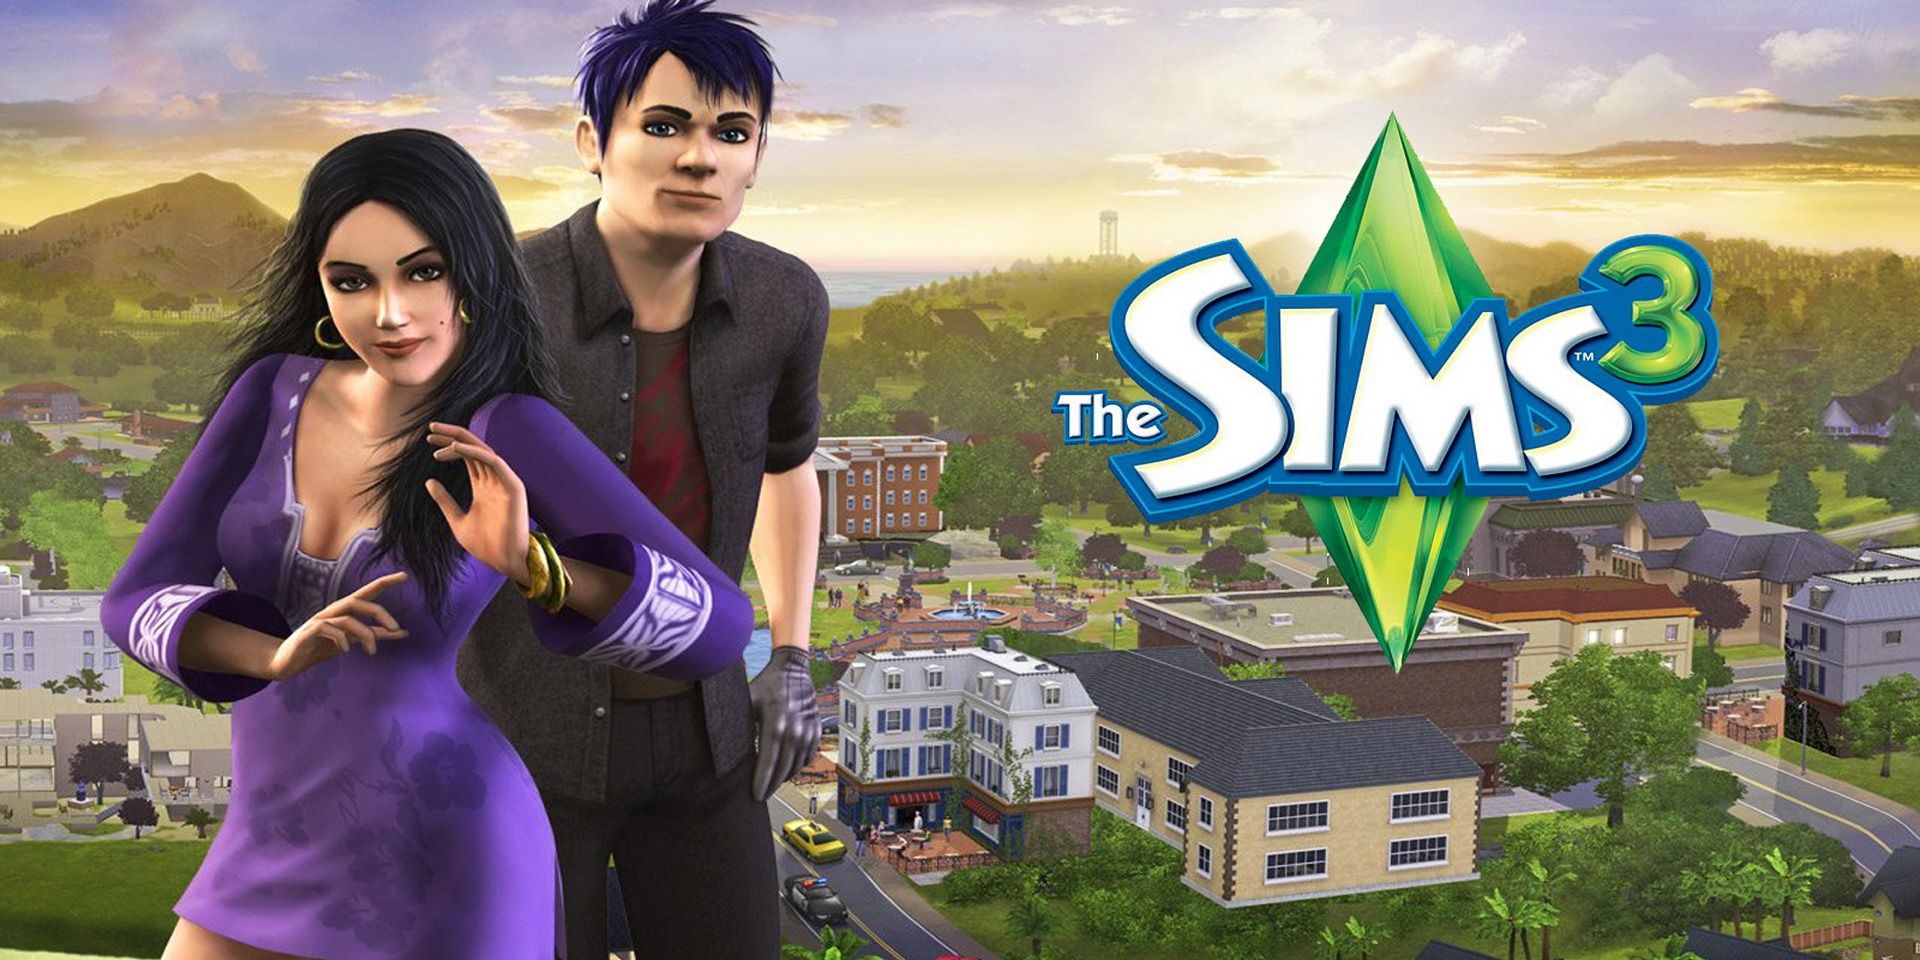 Заглавный арт The Sims 3 с позирующими мужчиной и женщиной 